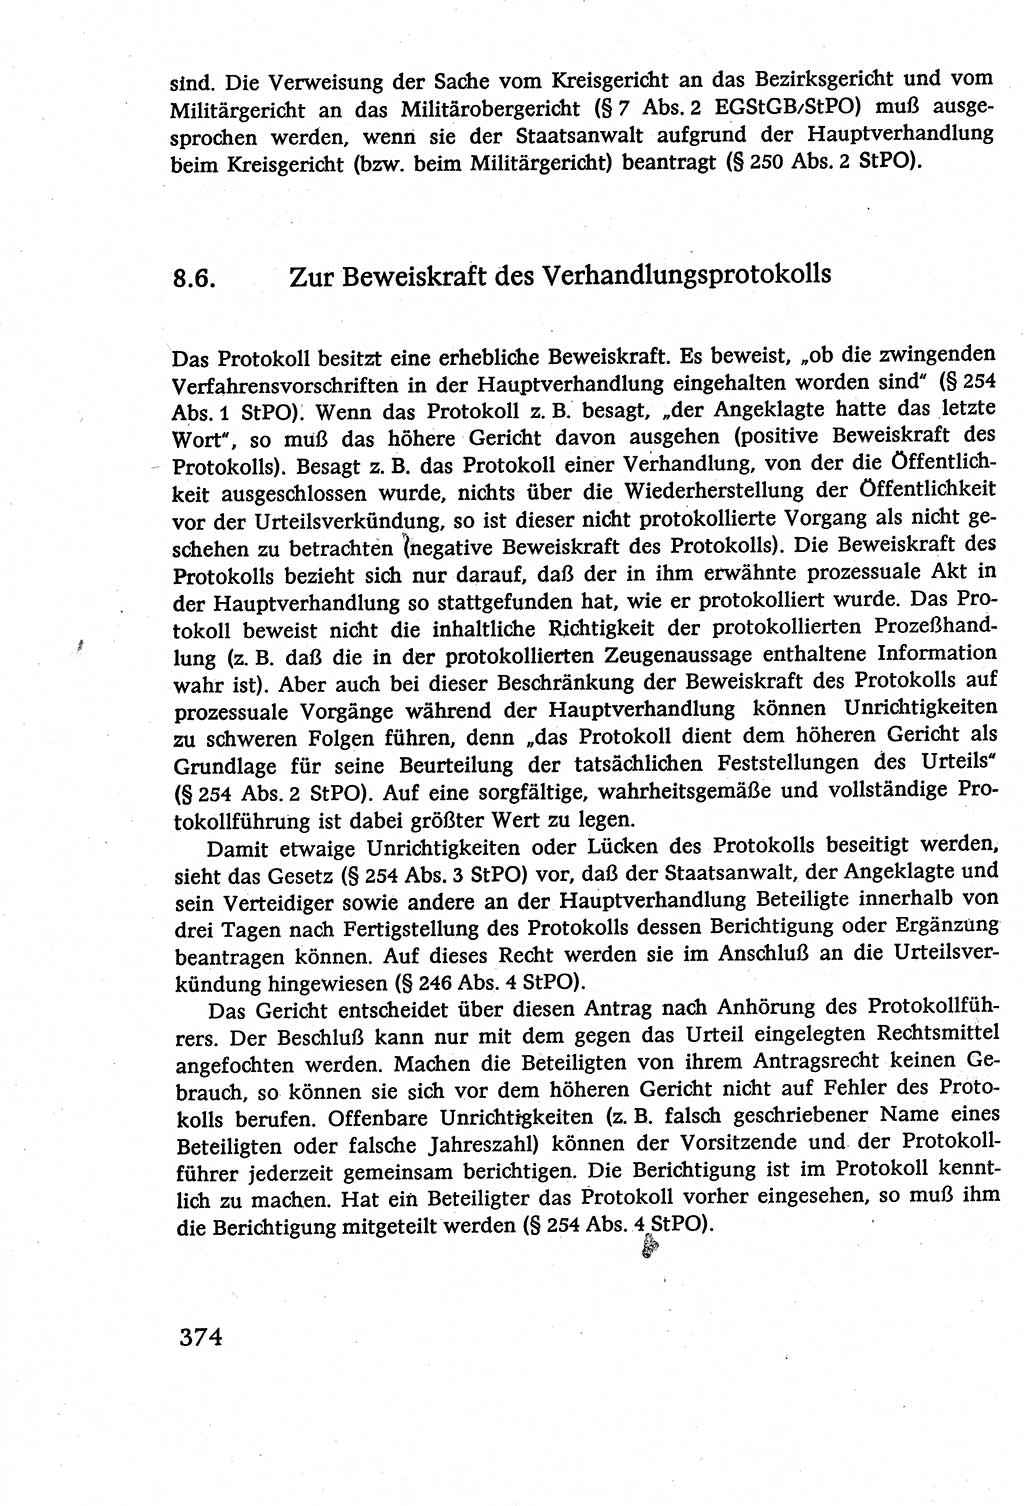 Strafverfahrensrecht [Deutsche Demokratische Republik (DDR)], Lehrbuch 1977, Seite 374 (Strafverf.-R. DDR Lb. 1977, S. 374)